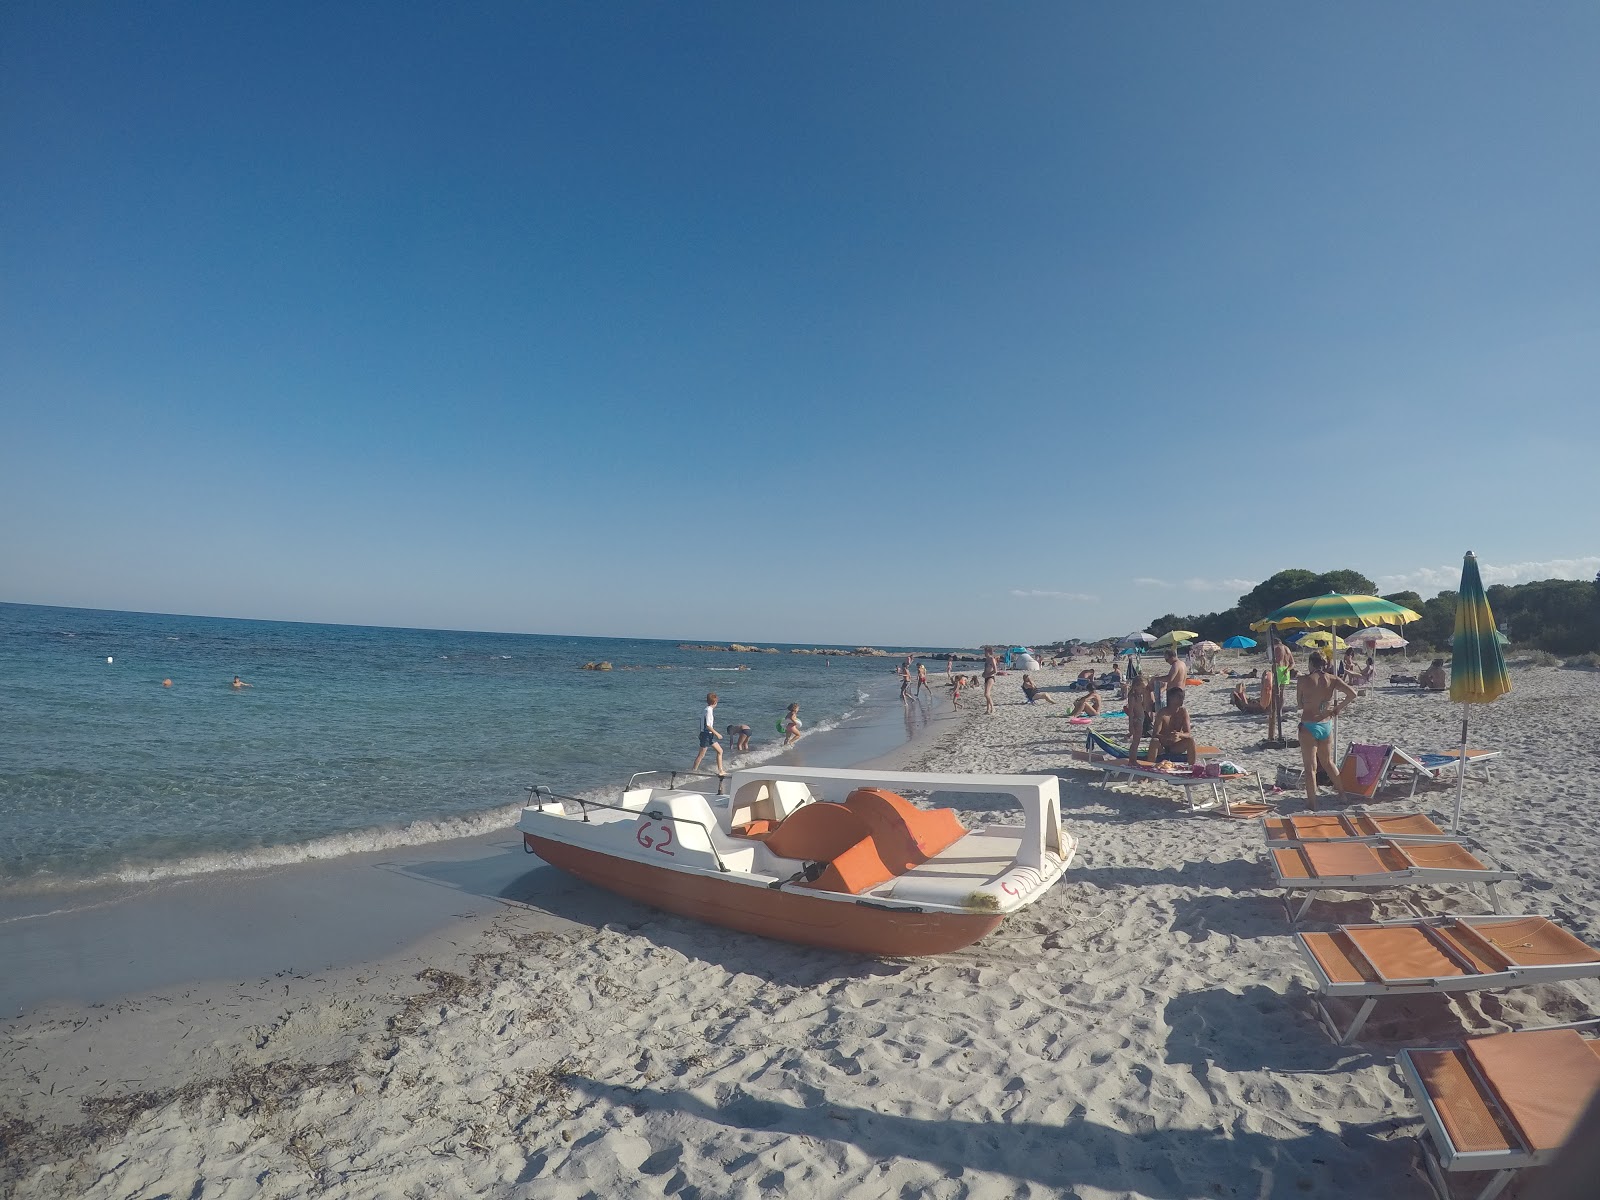 Sa Curcurica Plajı'in fotoğrafı plaj tatil beldesi alanı